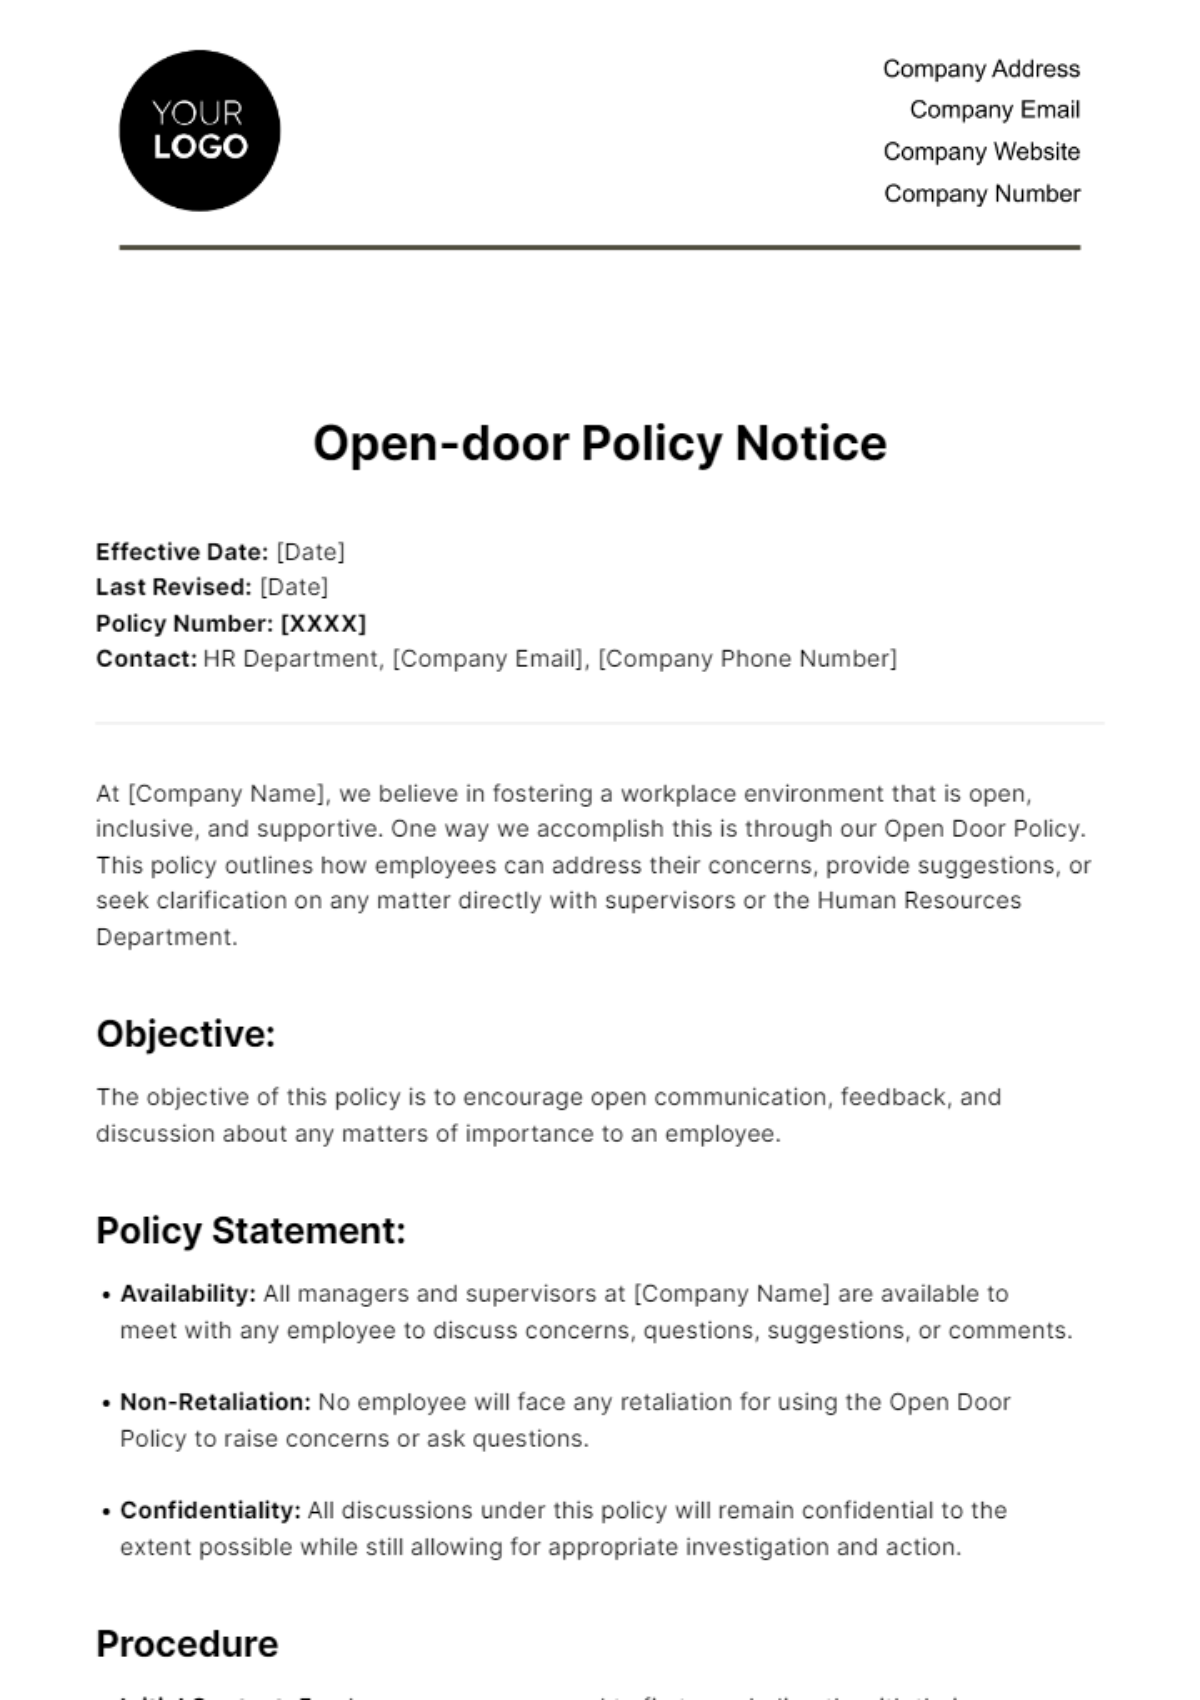 Open-door Policy Notice HR Template